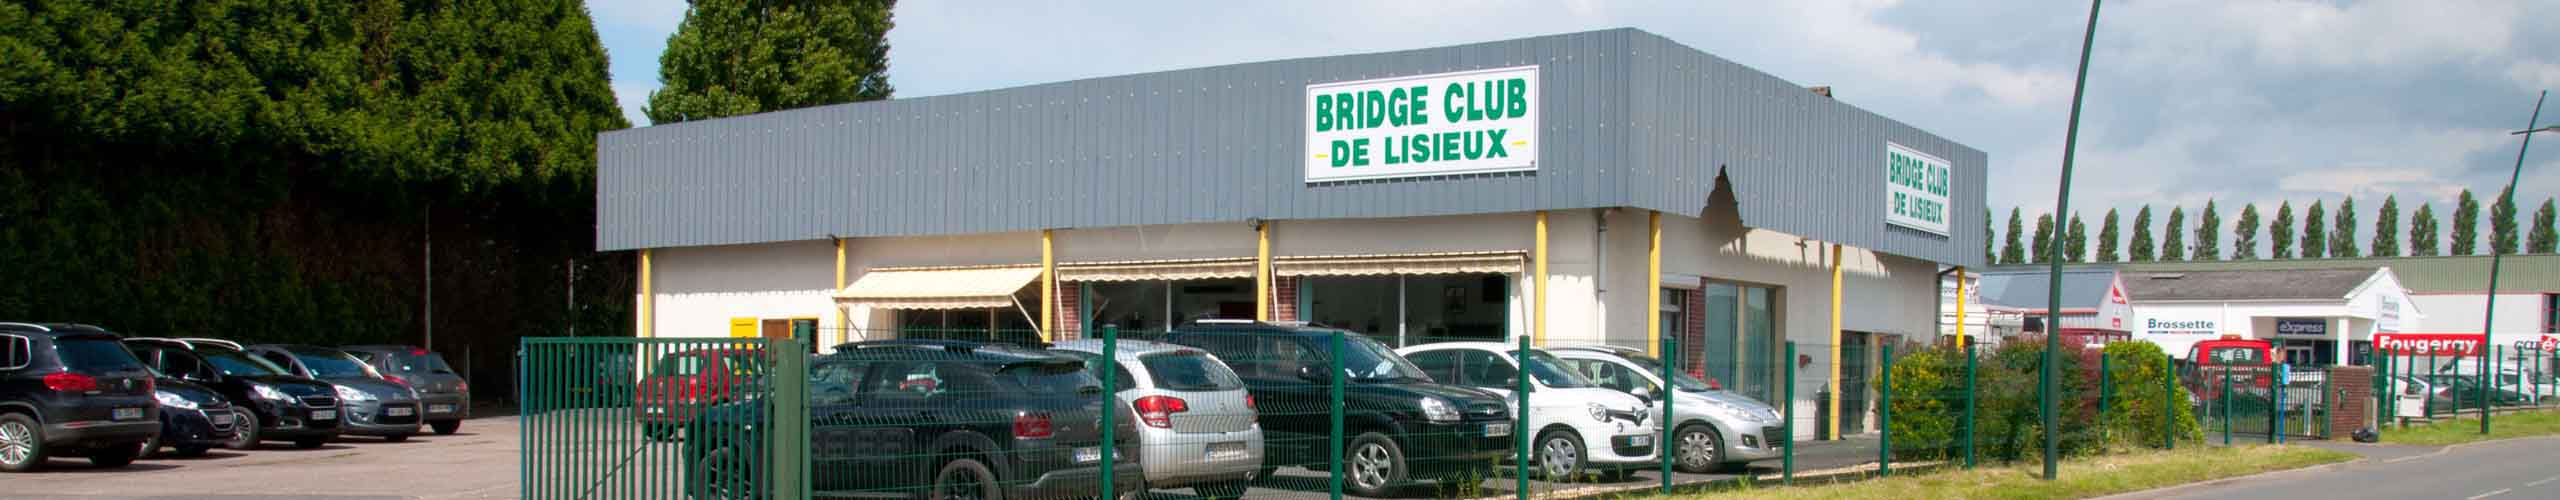 accès contact jeux cartes local bridge club lisieux pays d'Auge calvados normandie